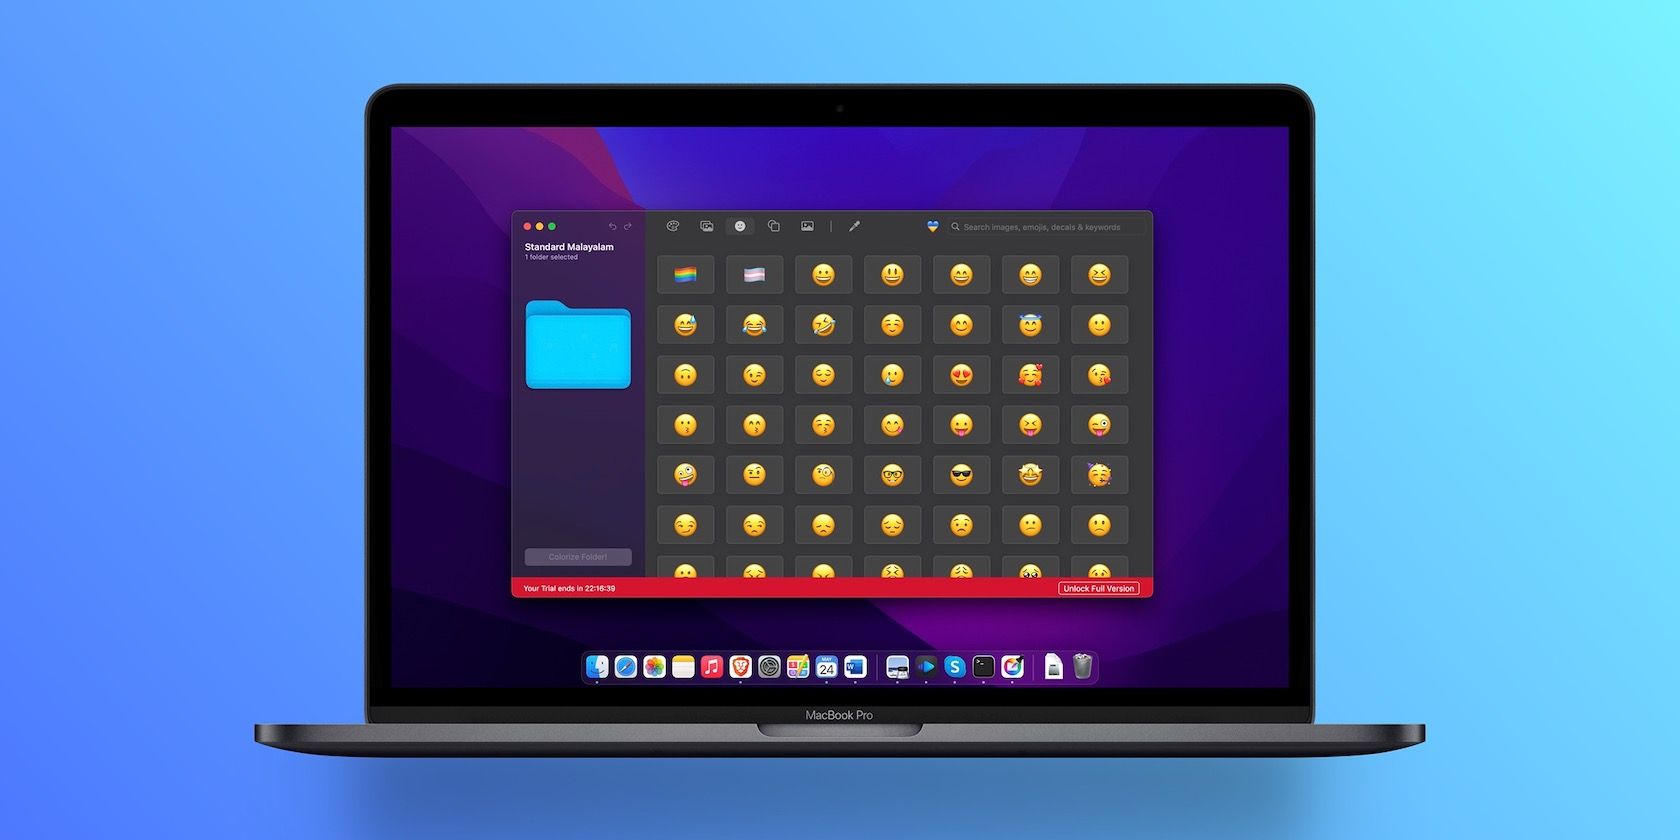 customizing folder icons on macbook pro